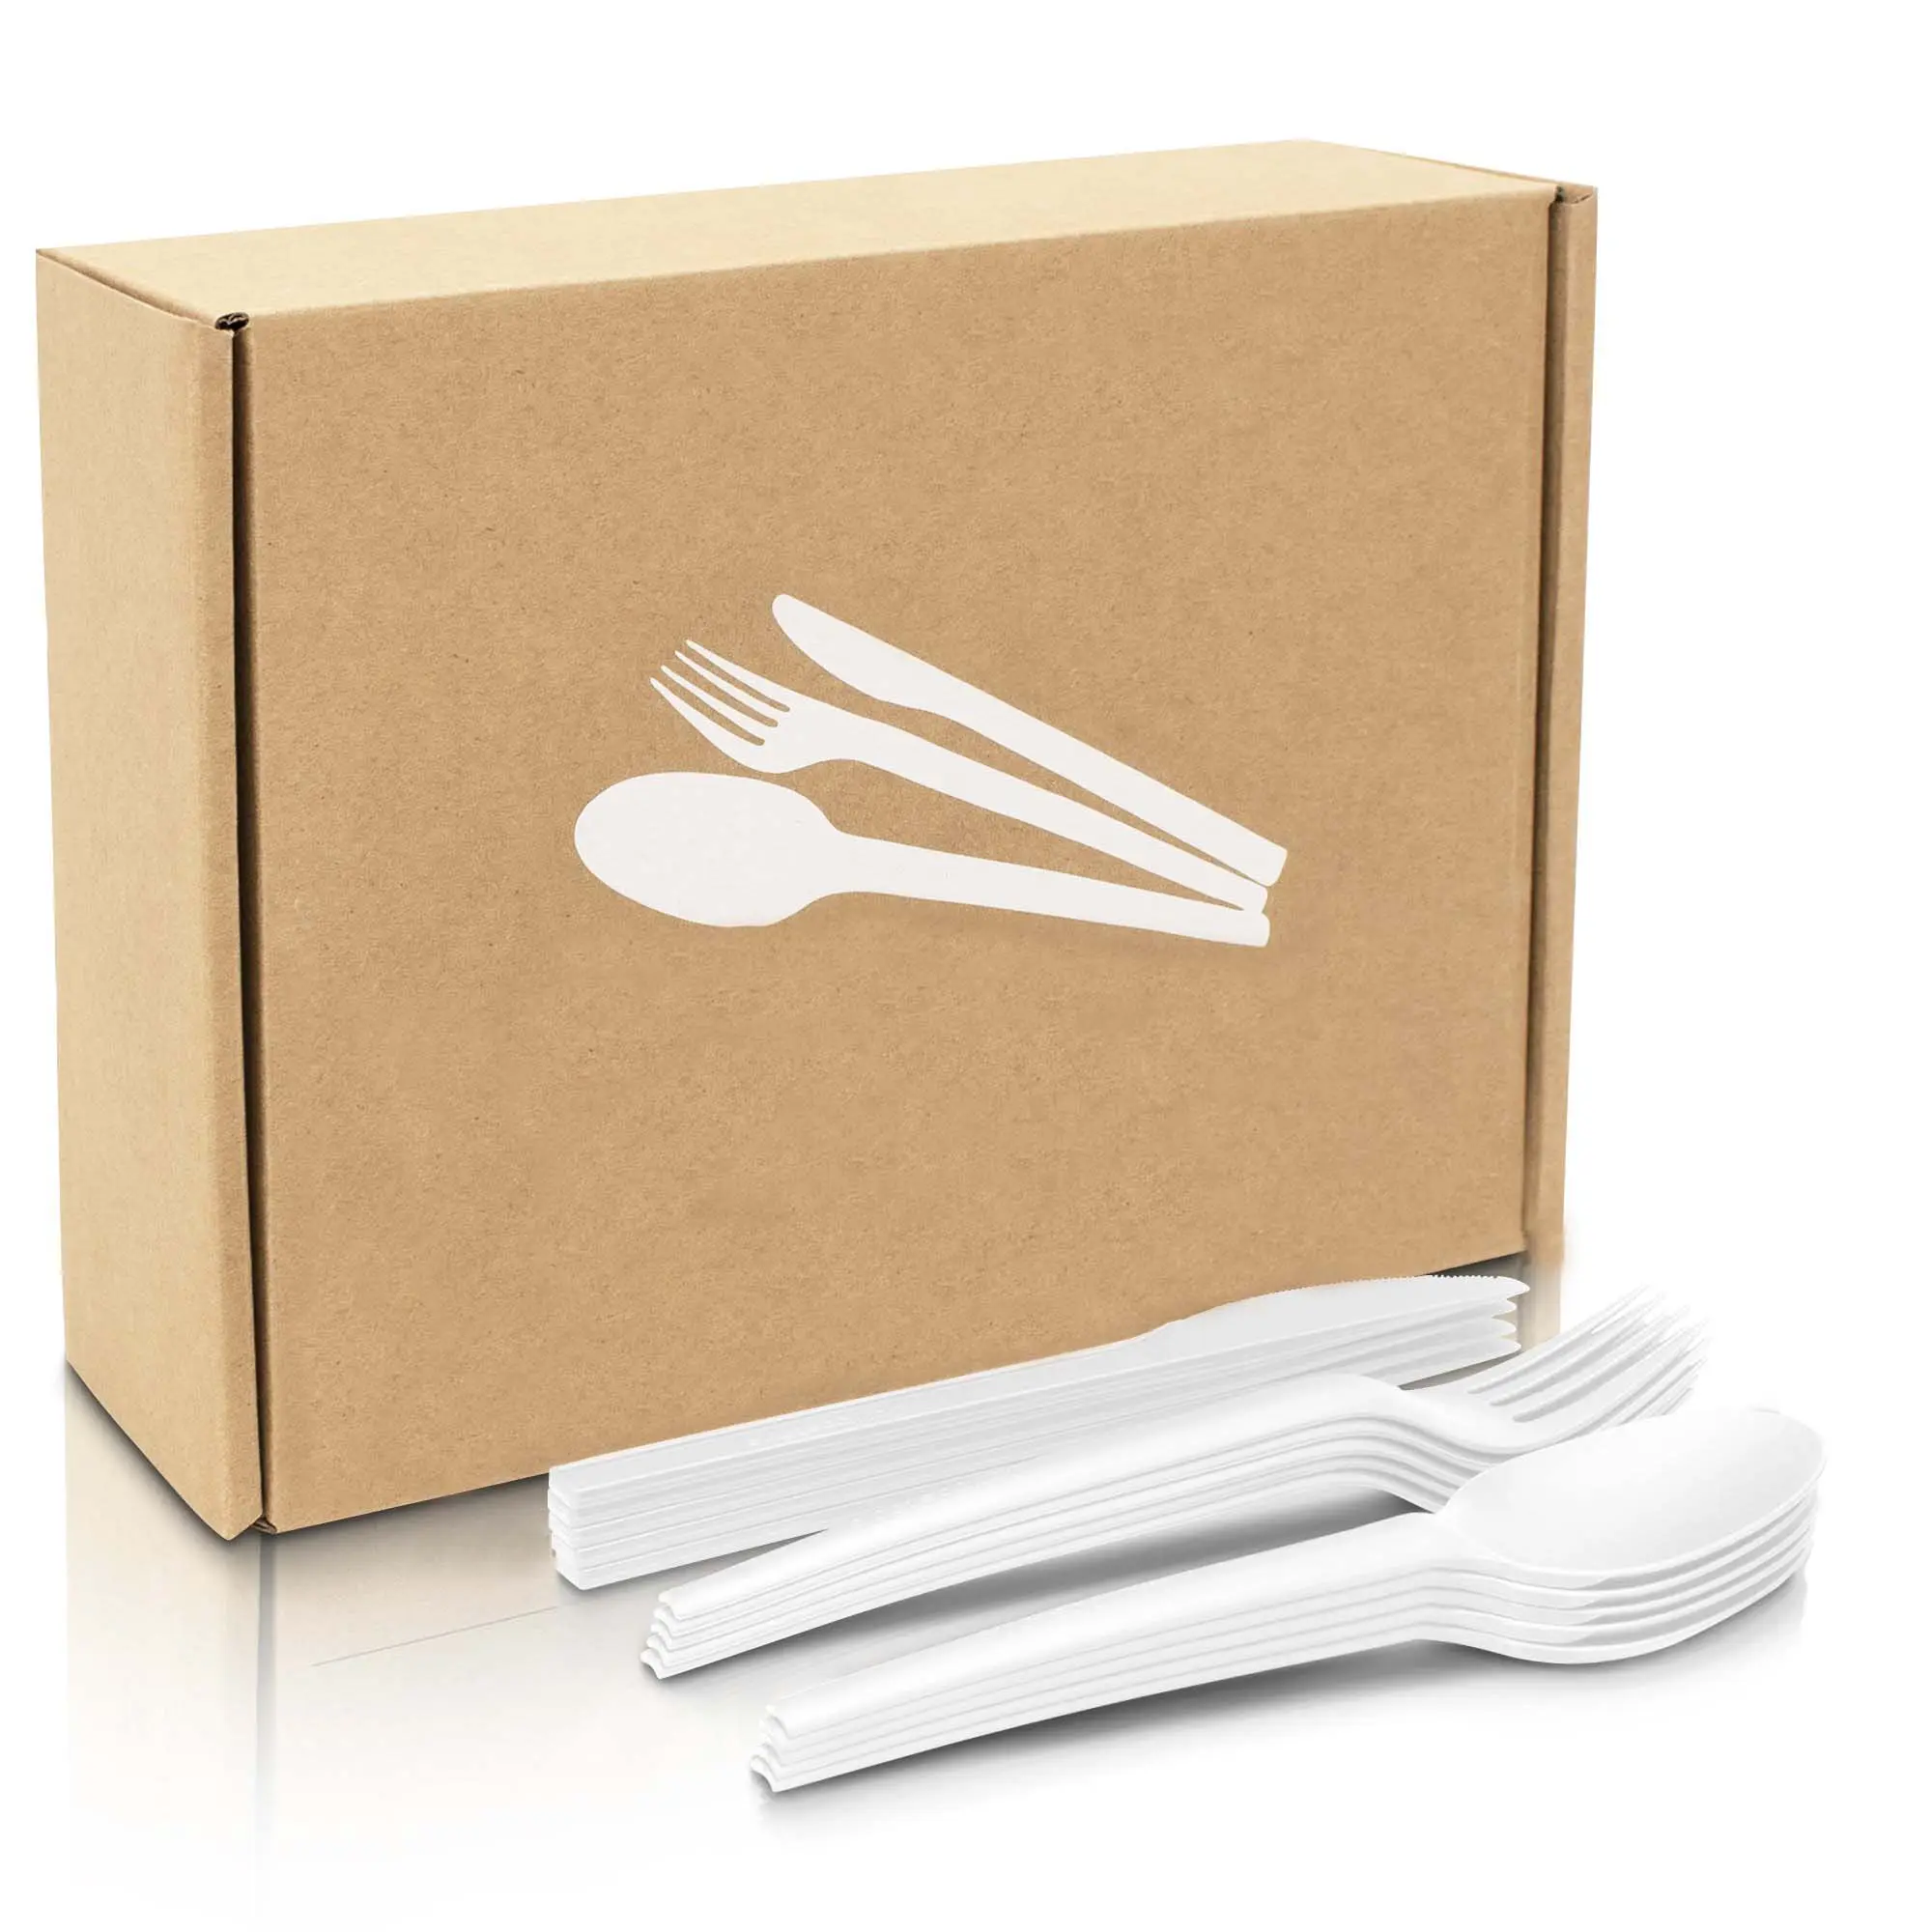 البلاستيك شحن 6.75 بوصة سلسلة CPLA مجموعة أدوات المائدة سكين شوكة ملعقة تركيبة خالية في للطي لون مربع